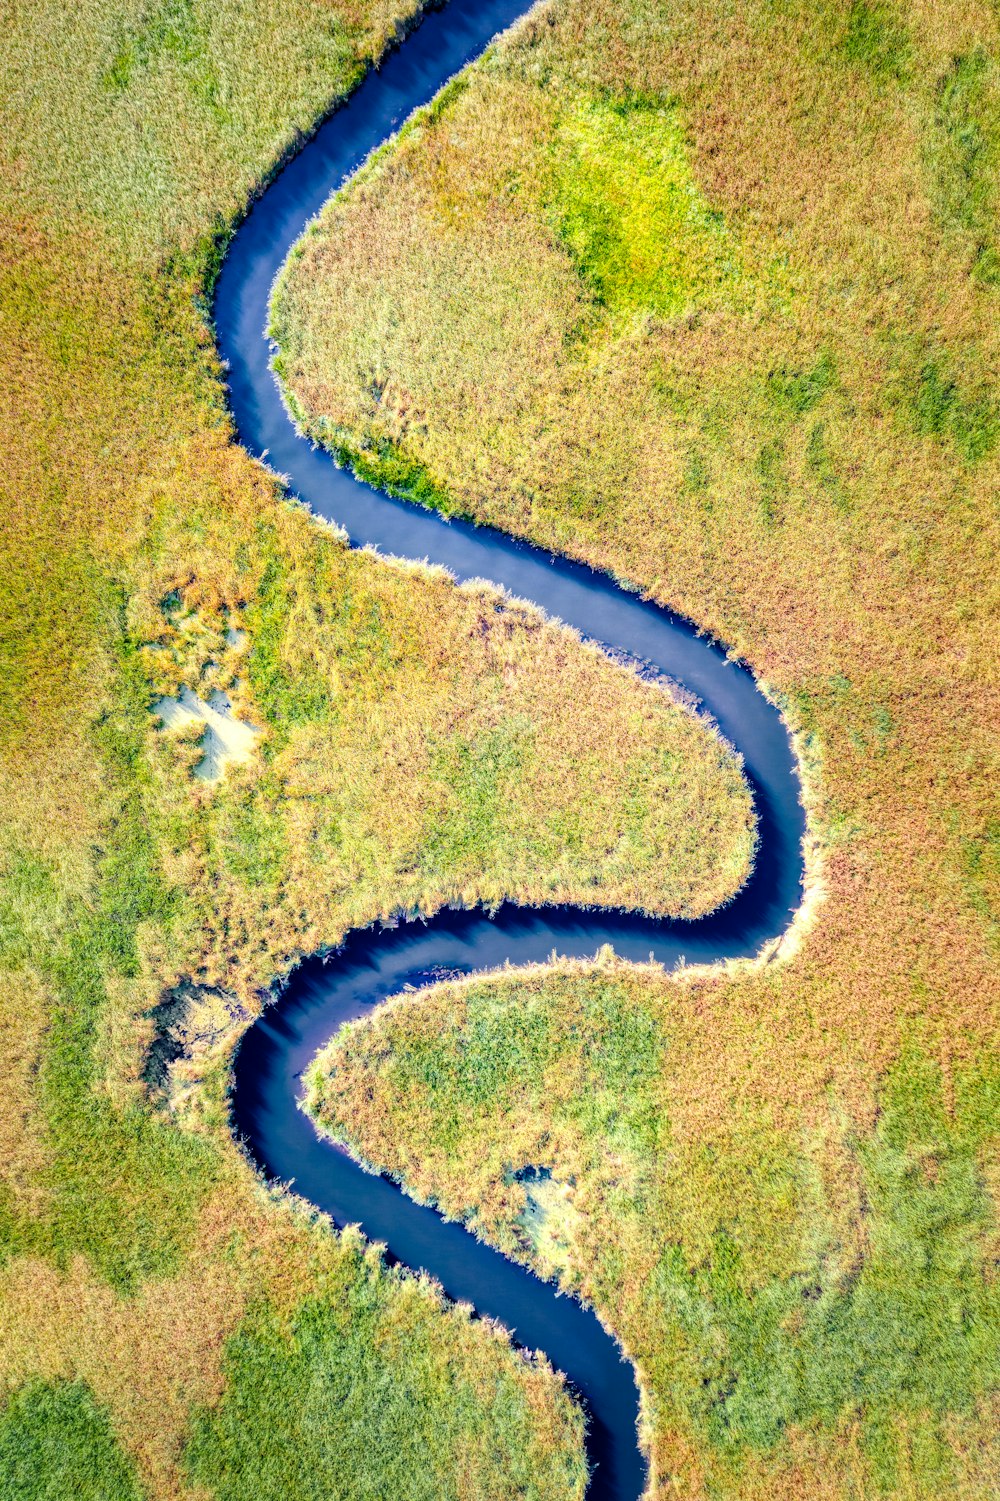 river between grass